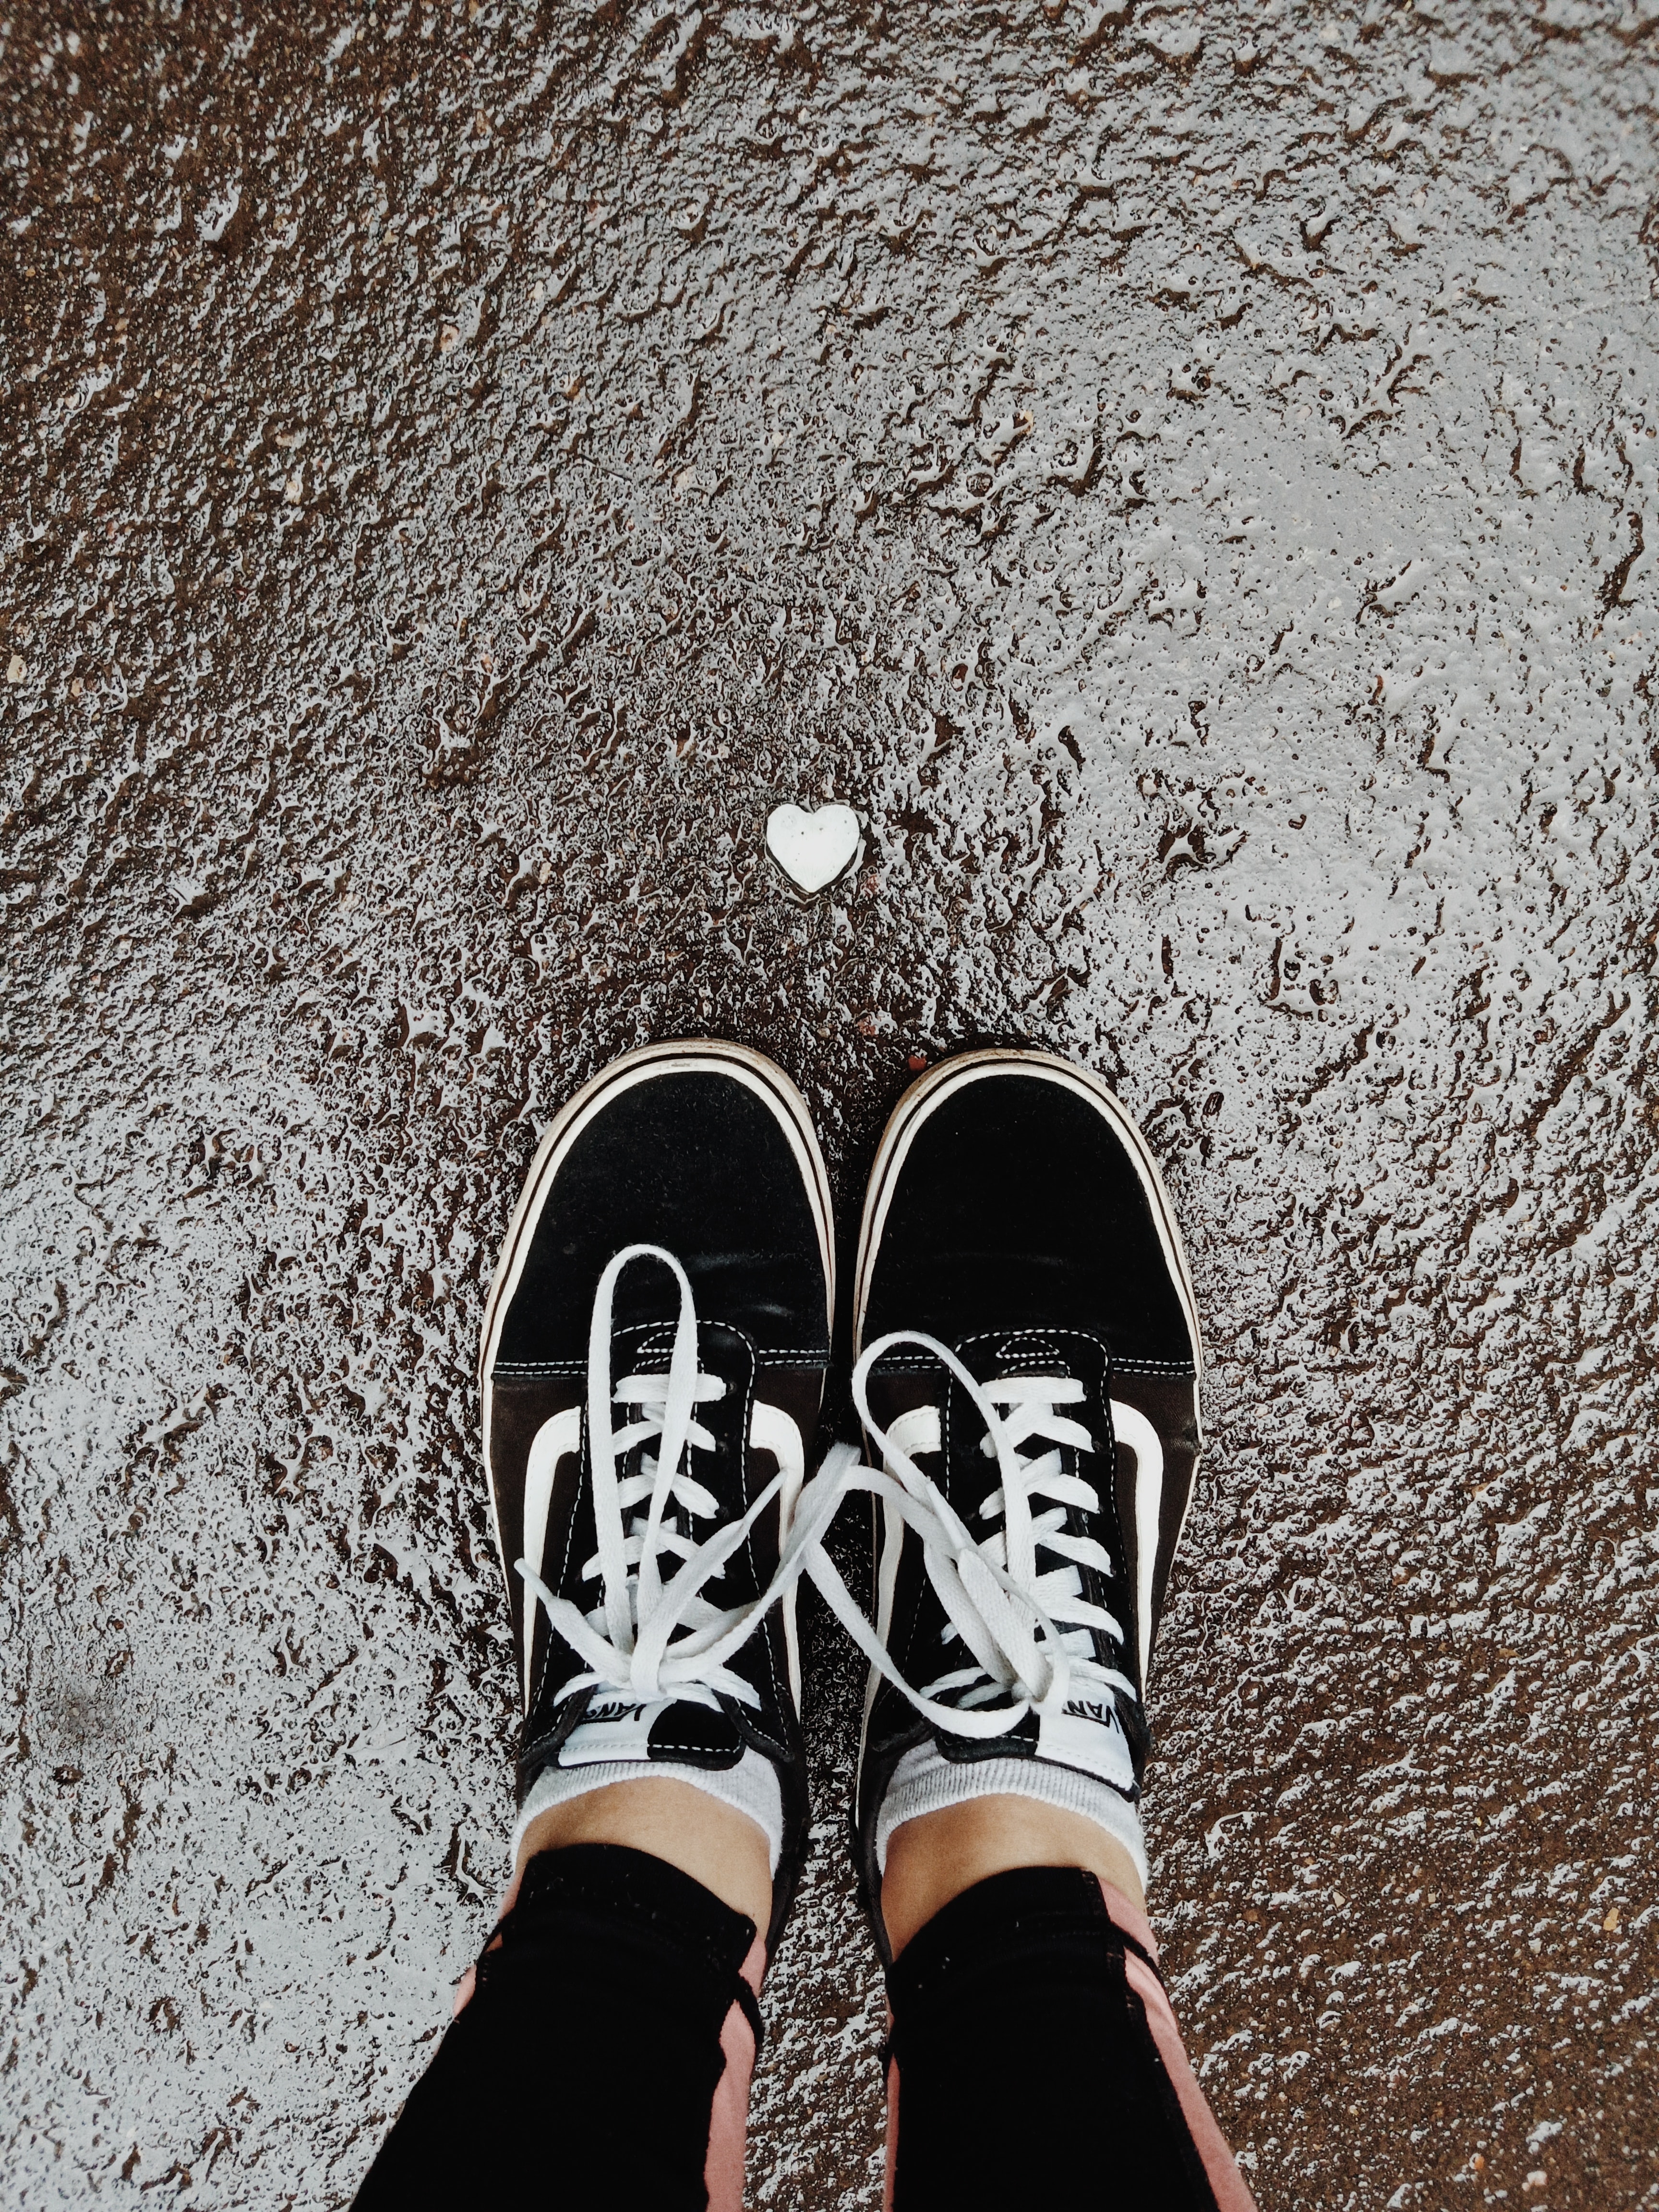 shoes, miscellanea, miscellaneous, legs, sneakers, wet, asphalt, heart